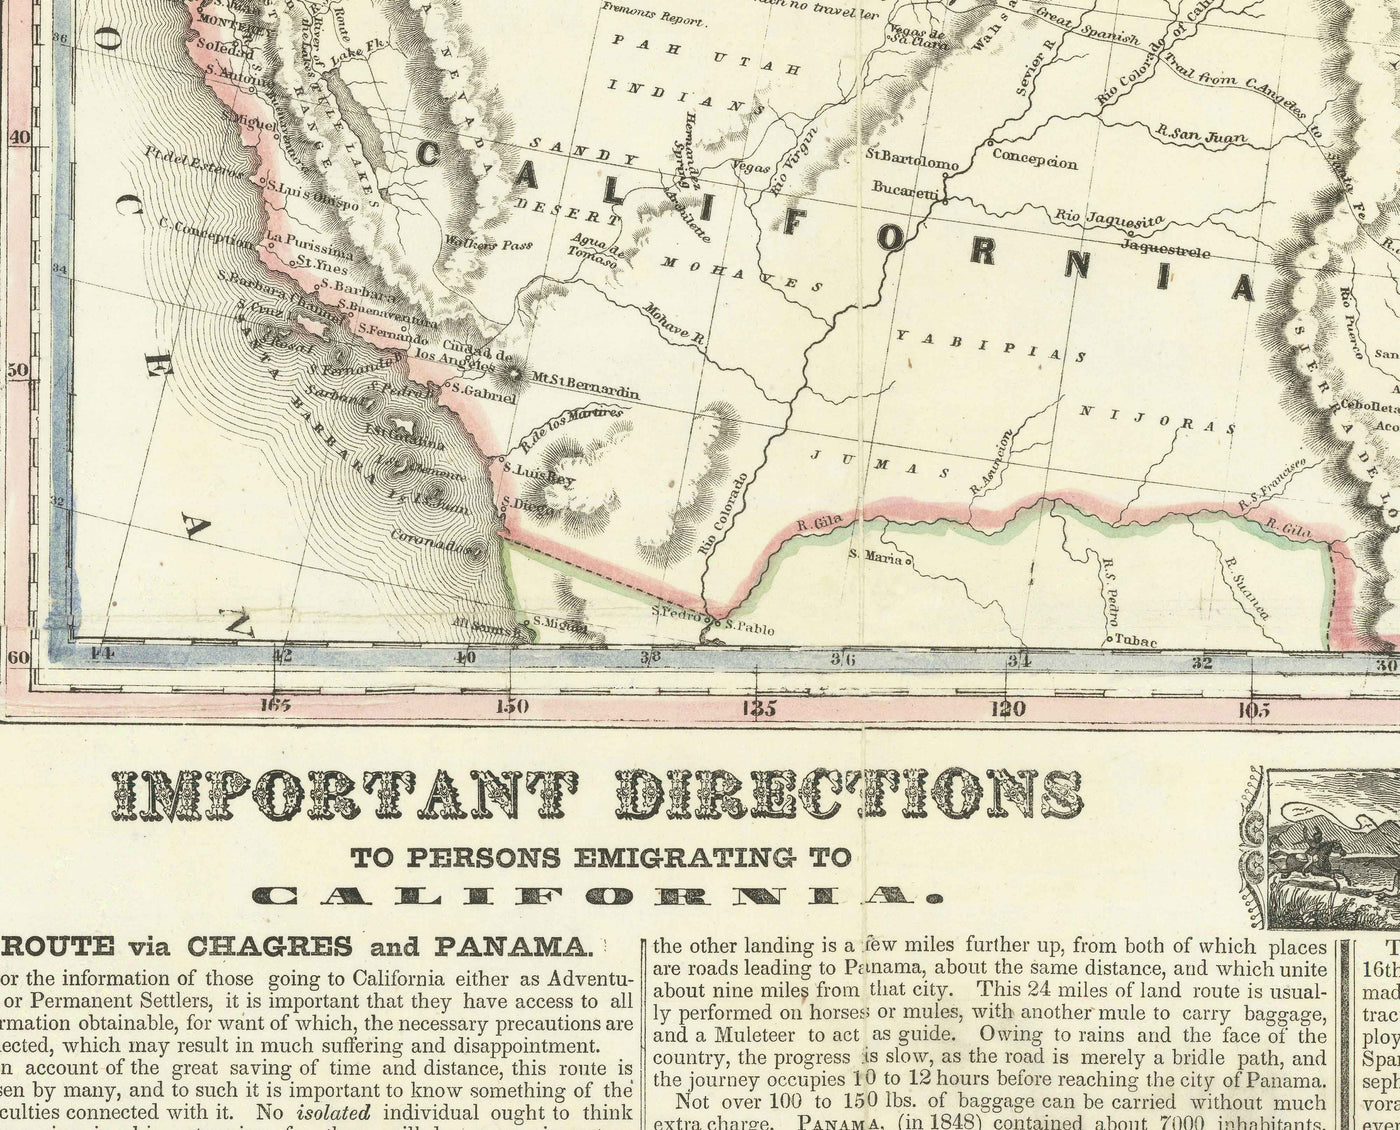 Antiguo mapa de la fiebre del oro en California en 1849 por Ensign & Thayer - Viejo Oeste, Sacramento, Nuevo México, Oregón, Texas